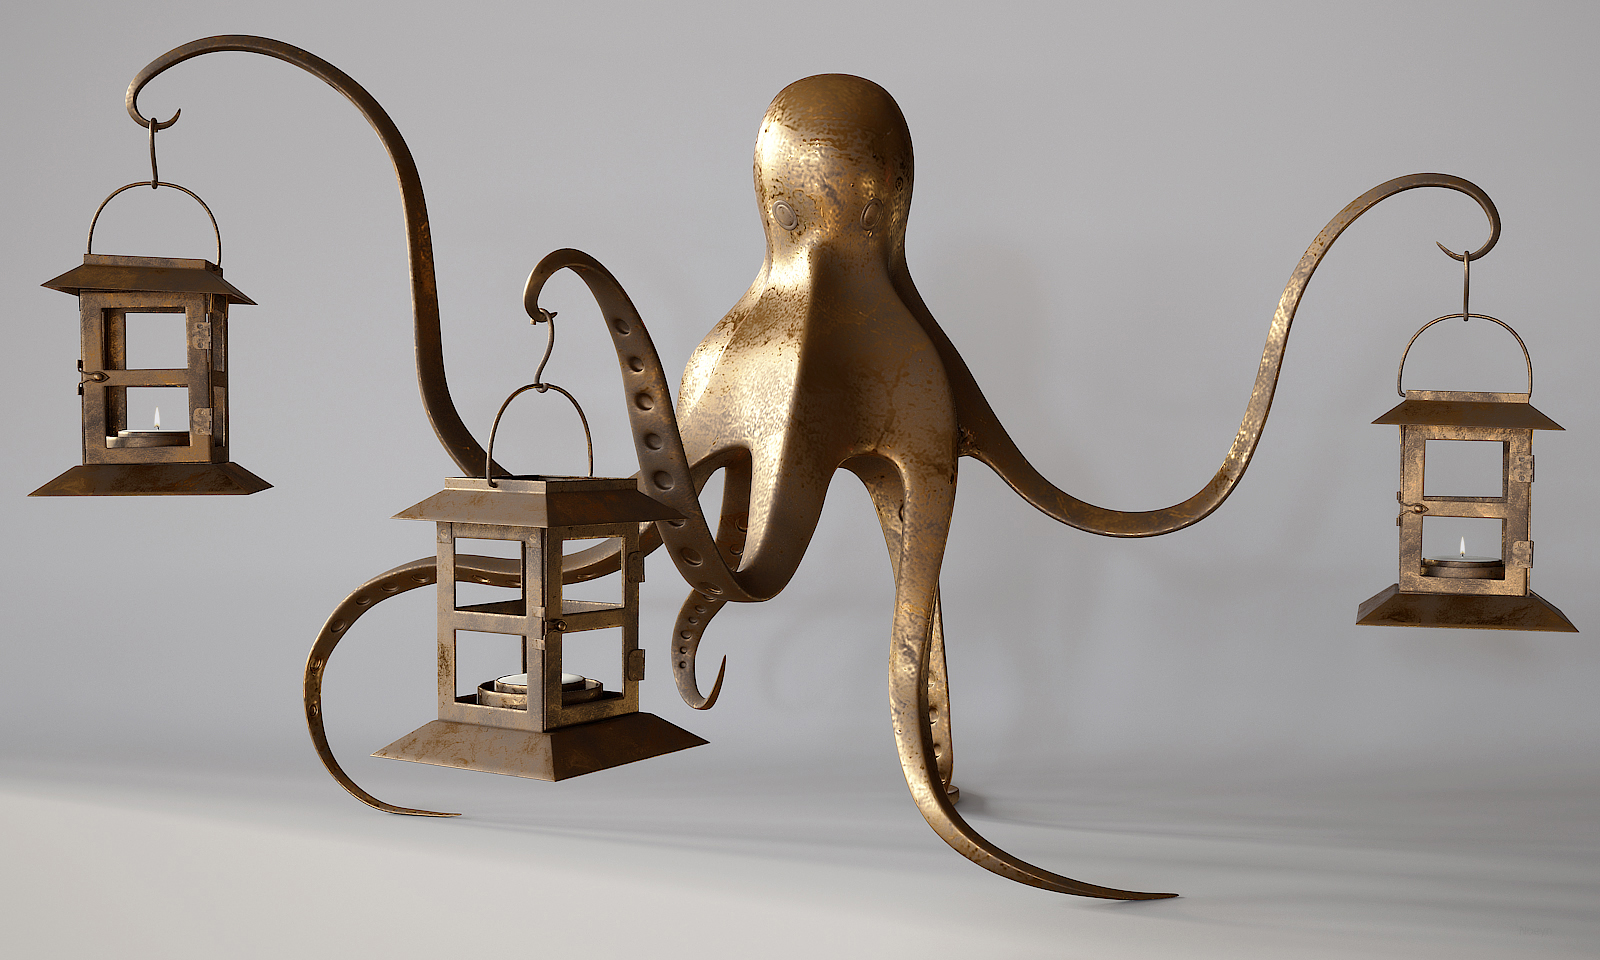 Vrijwel koud leerplan Octopus Lamp by ANoeyn on DeviantArt